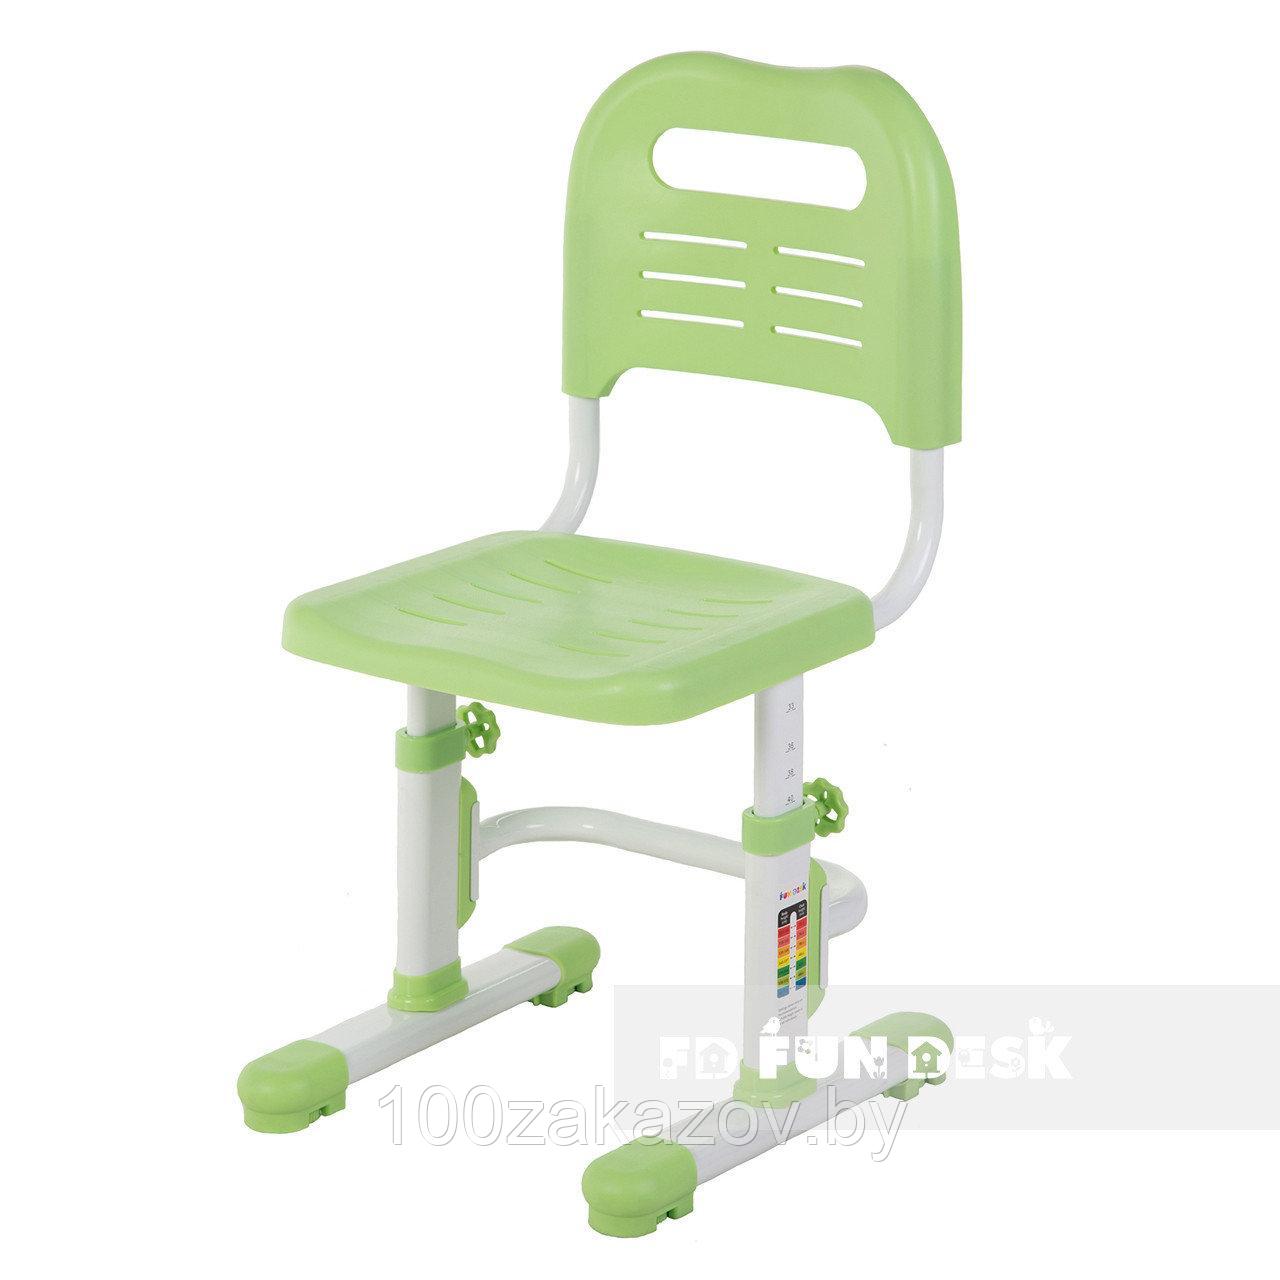   Детский растущий стул FUNDESK SST3L Стул для школьника